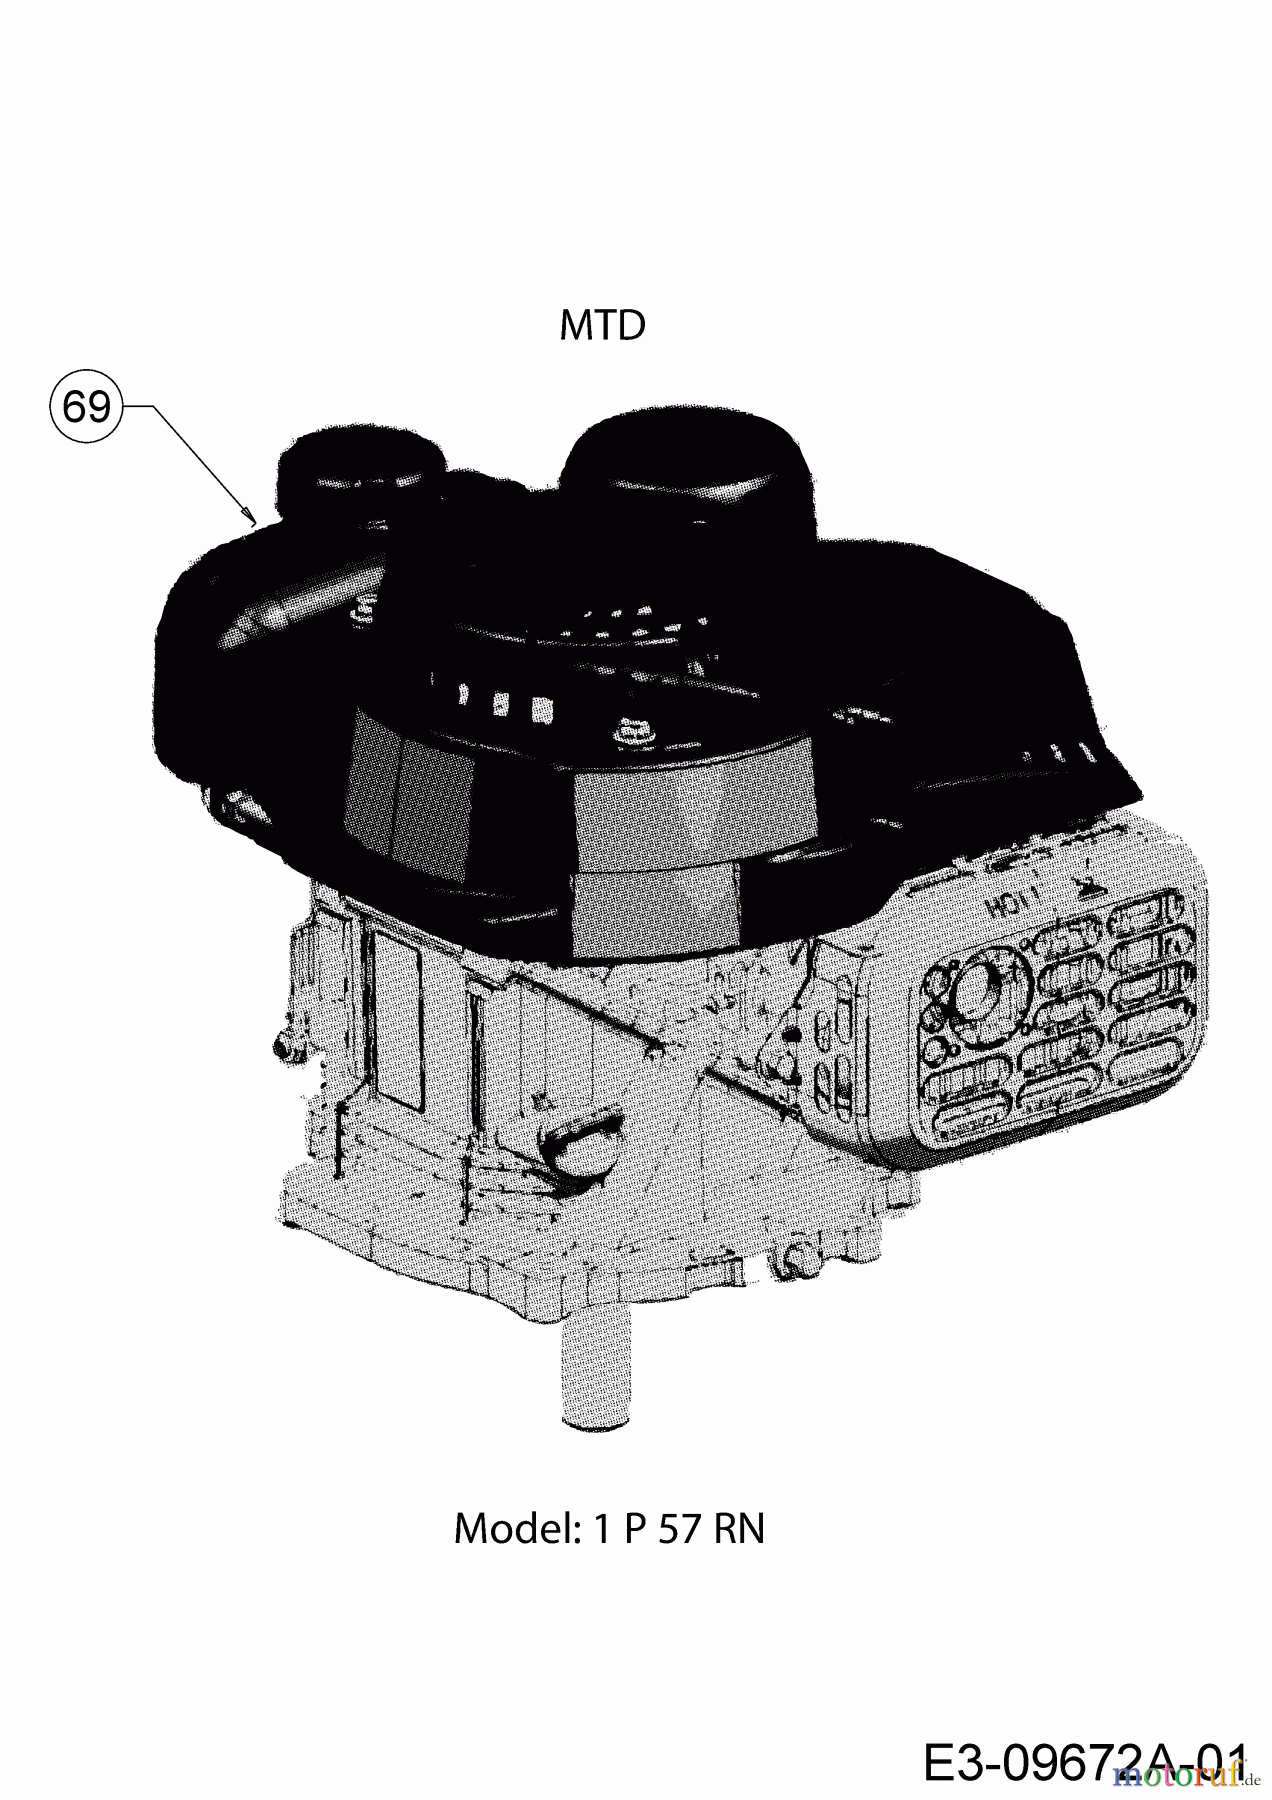  MTD Petrol mower Smart 51 BO 11B-02SH600 (2019) Engine MTD